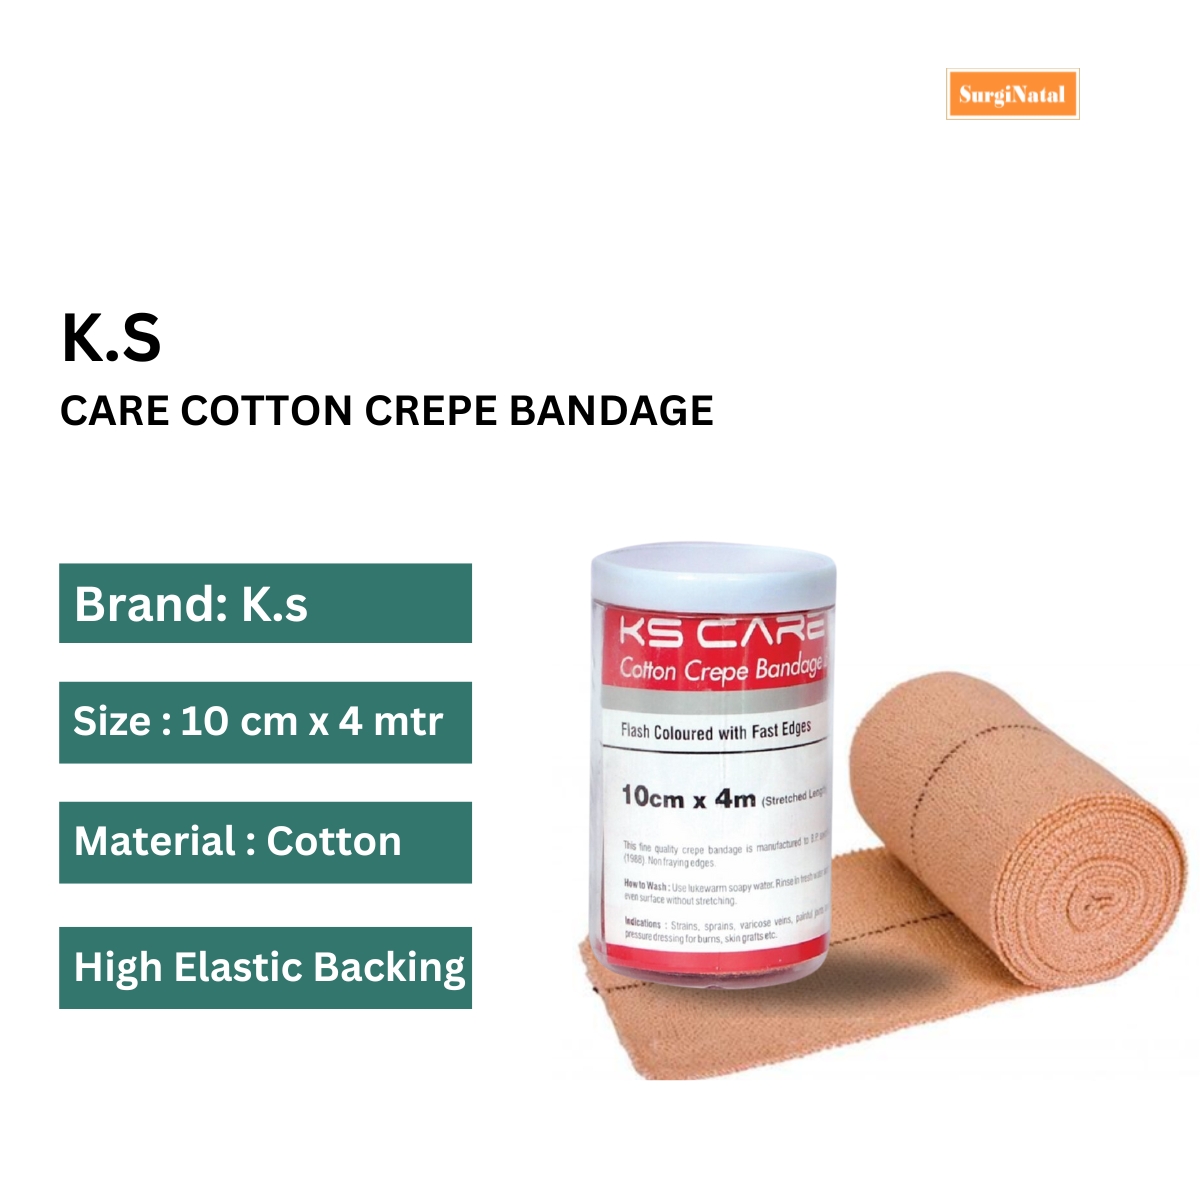 k. s. care cotton crepe bandage 10 cm x 4 mtr